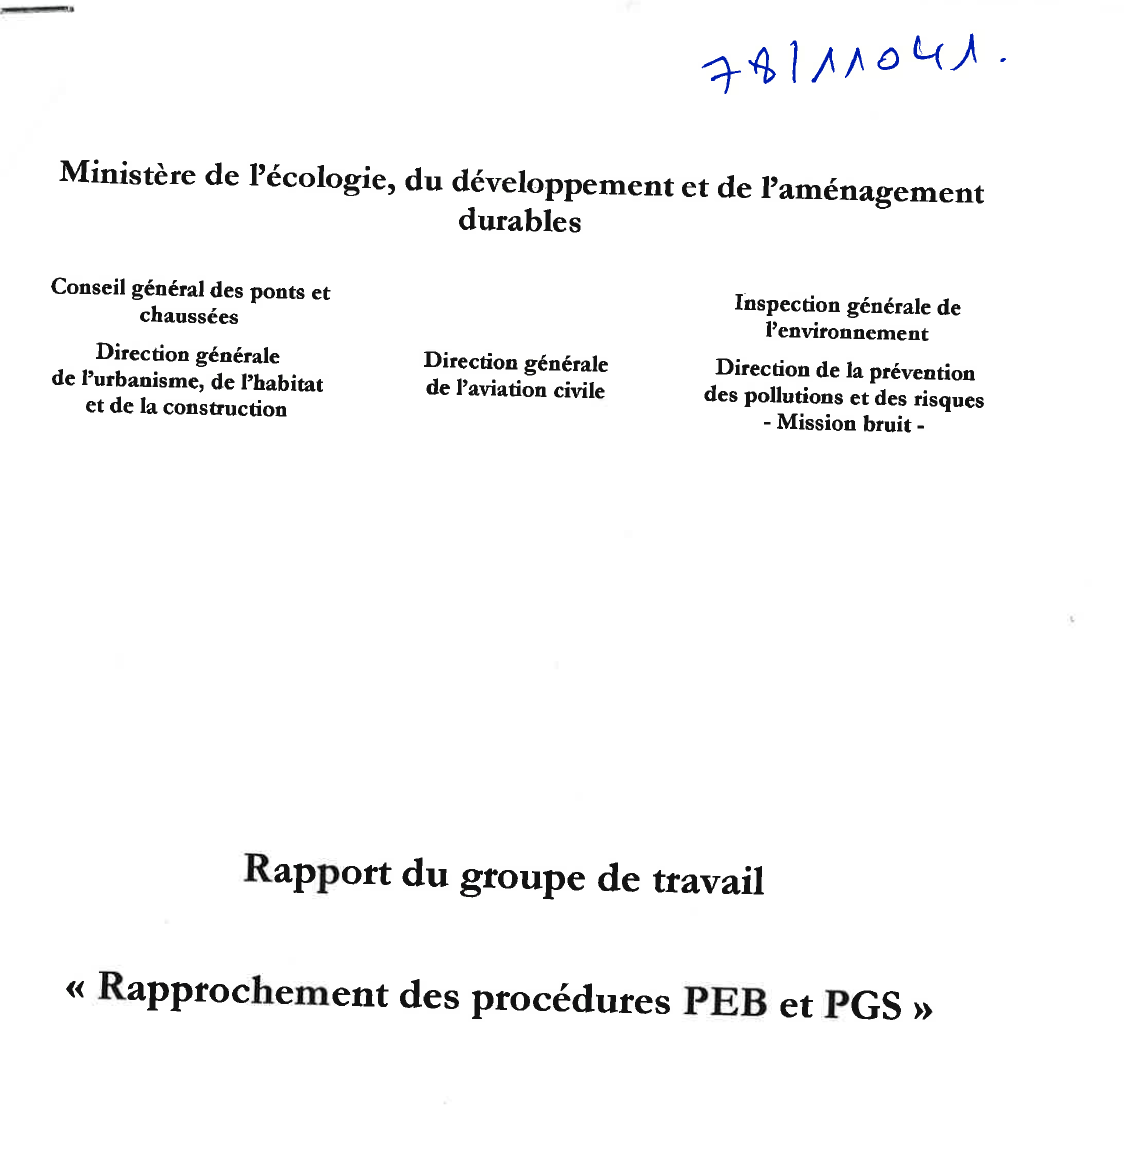 Rapport du groupe de travail “Rapprochement des procédures PEB et PGS”